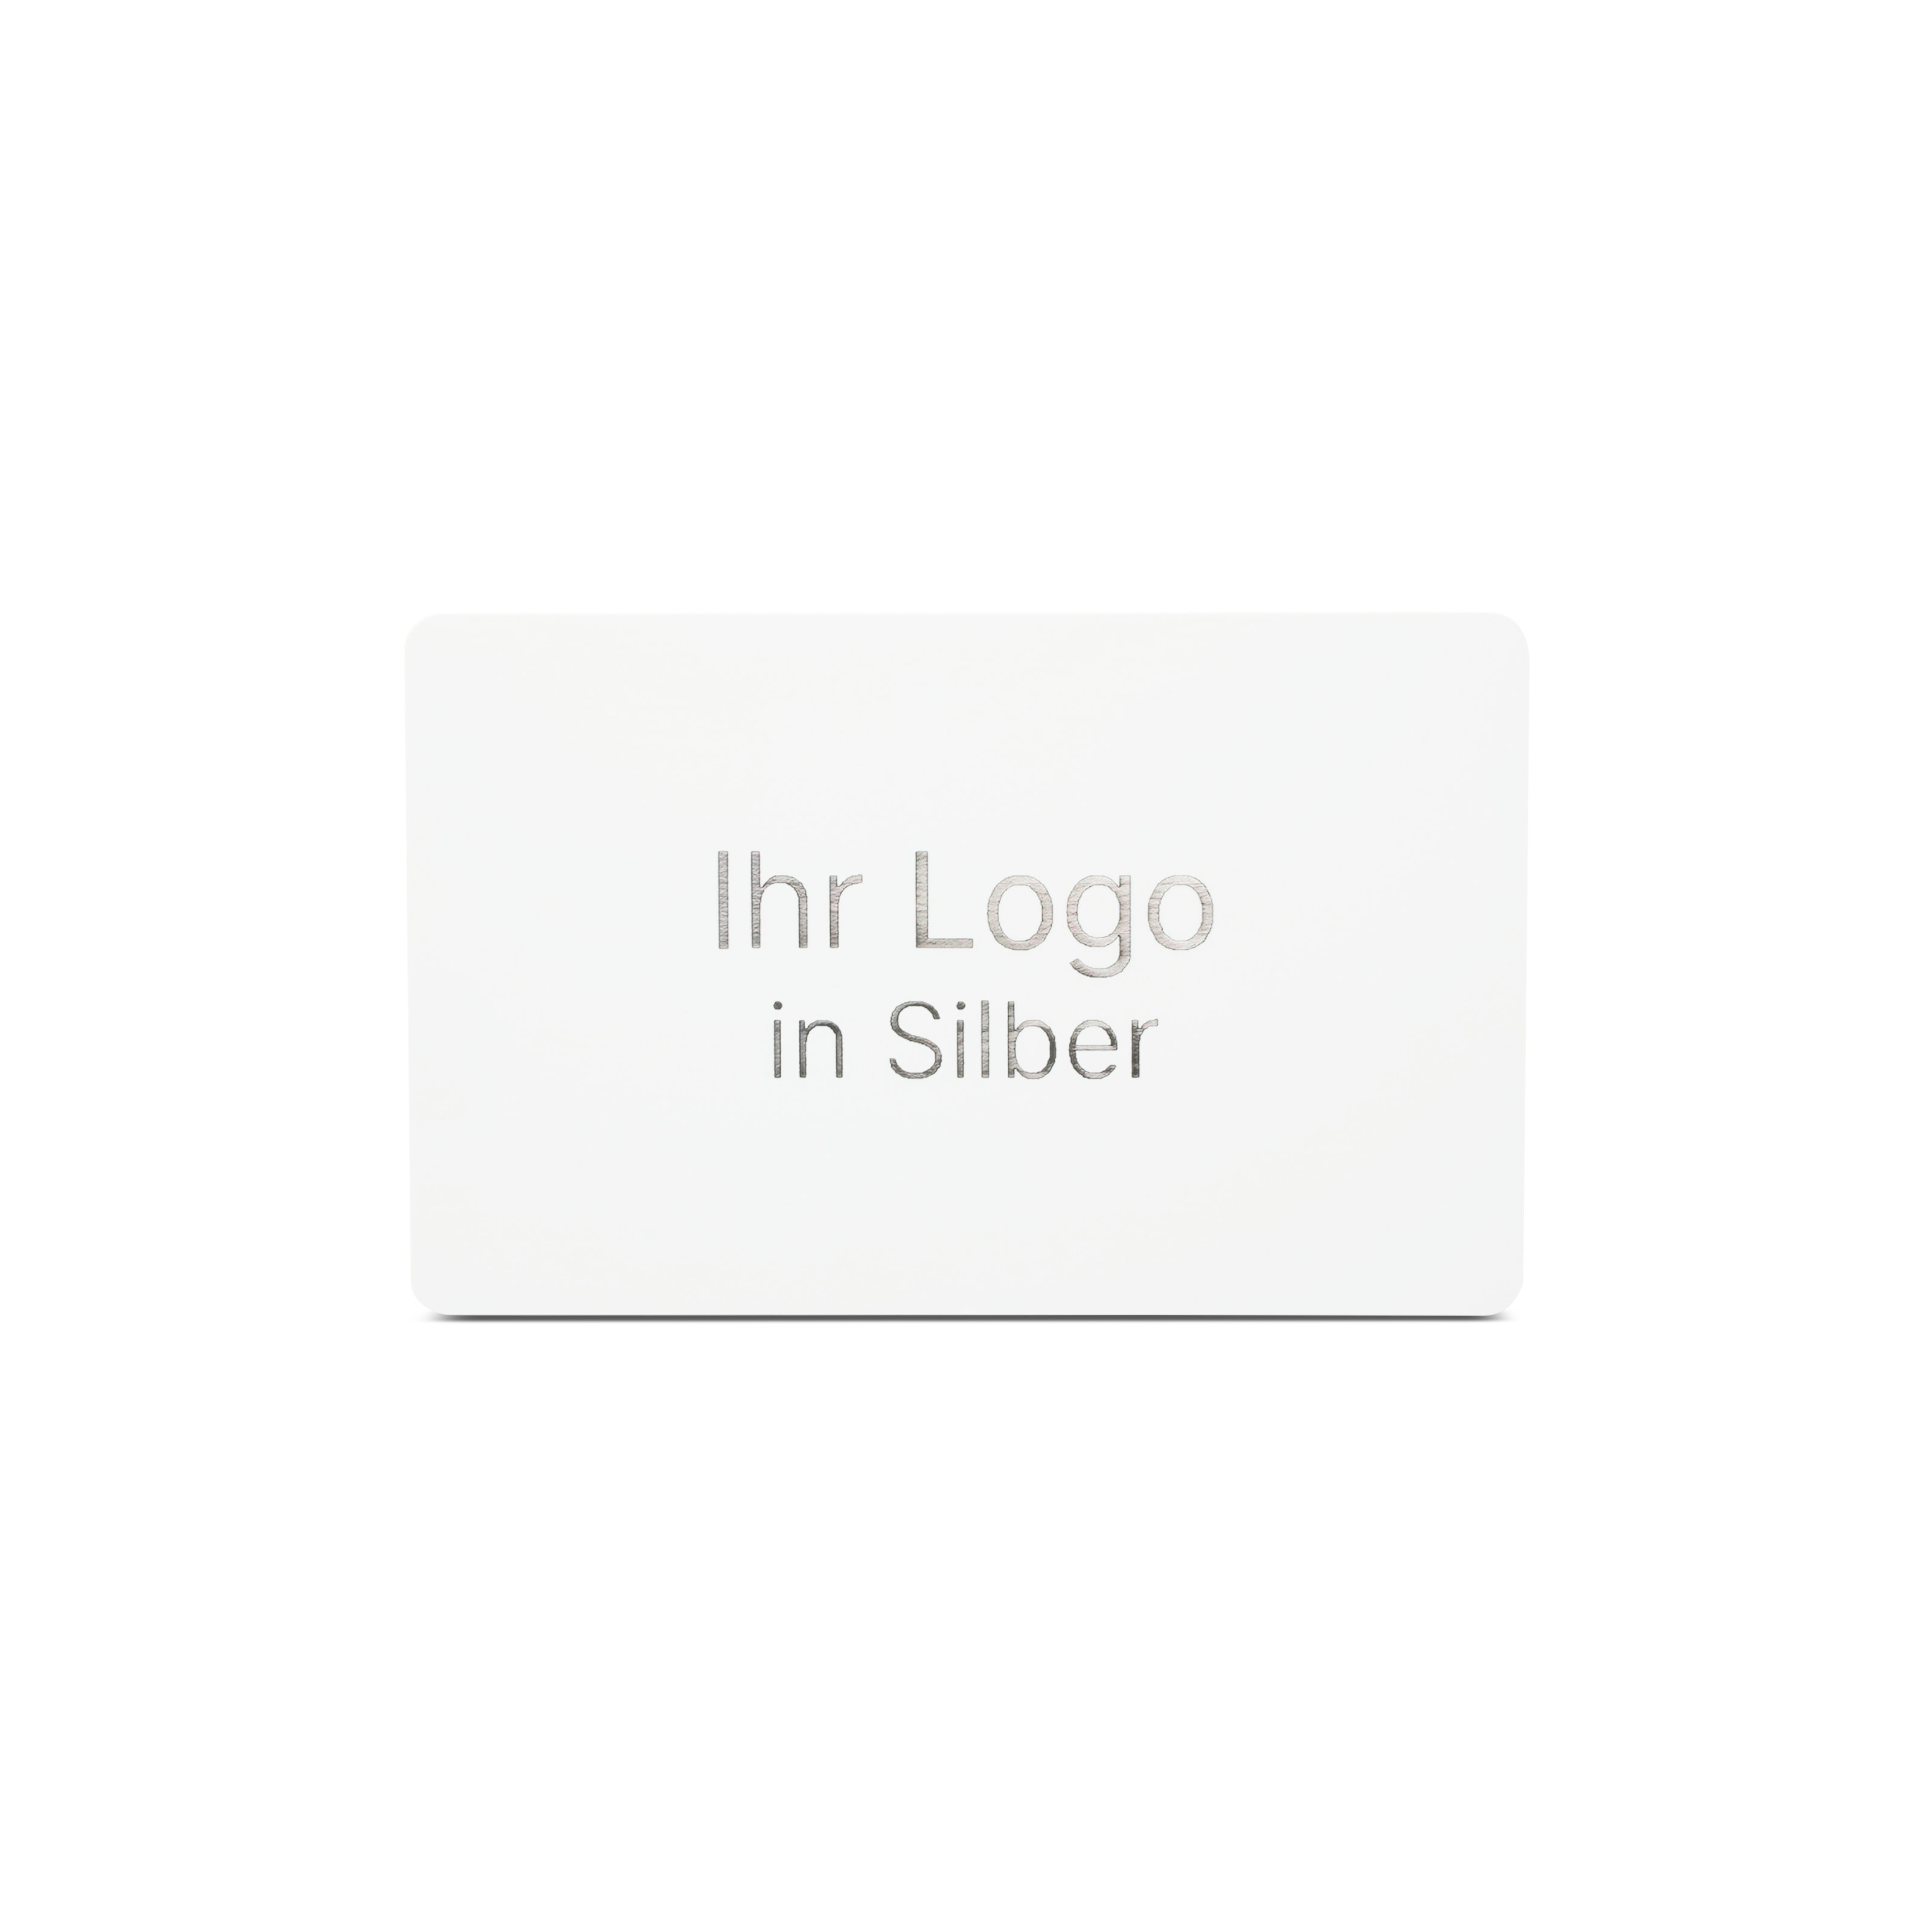 Weiße NFC Karte aus PVC mit Bedruckung "Ihr Logo in Silber"